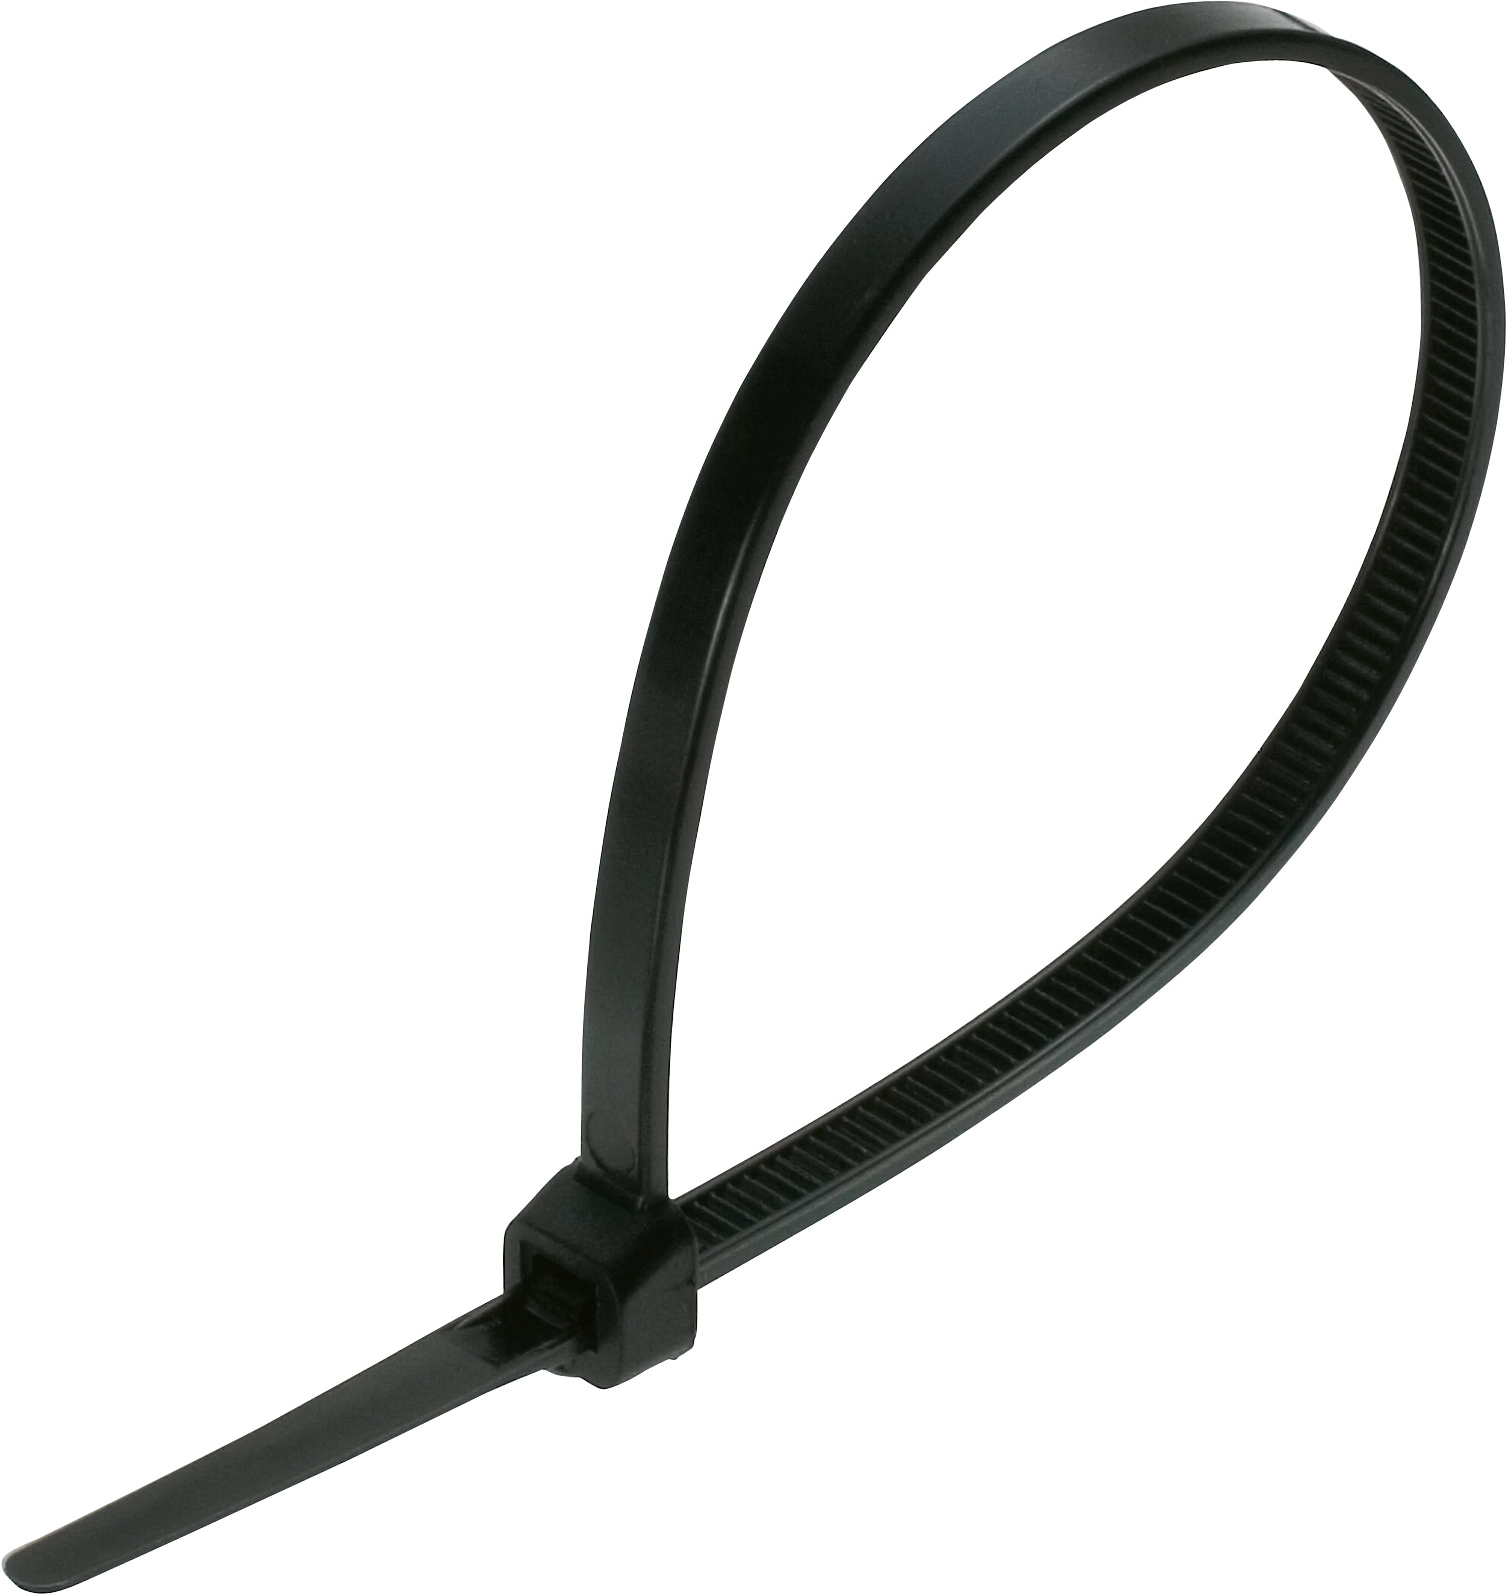 Kabelbinder schwarz kaufen - 100 Stk.